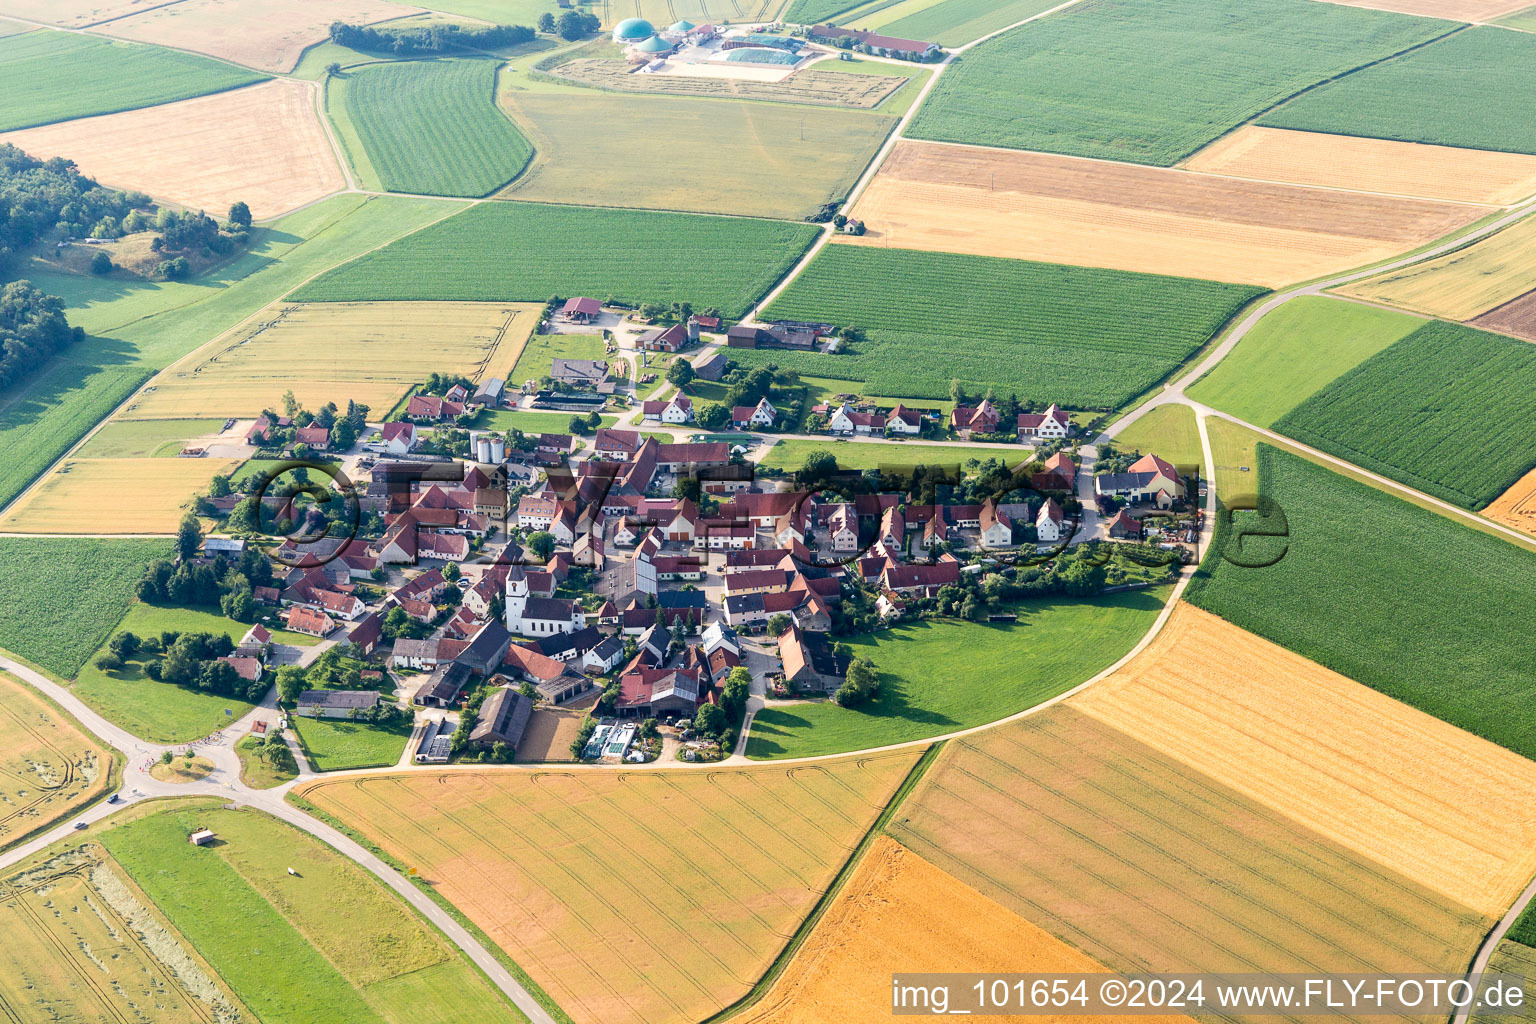 Luftbild von Dorf - Ansicht im Donauries am Rande von landwirtschaftlichen Feldern und Nutzflächen in Mönchsdeggingen im Bundesland Bayern, Deutschland